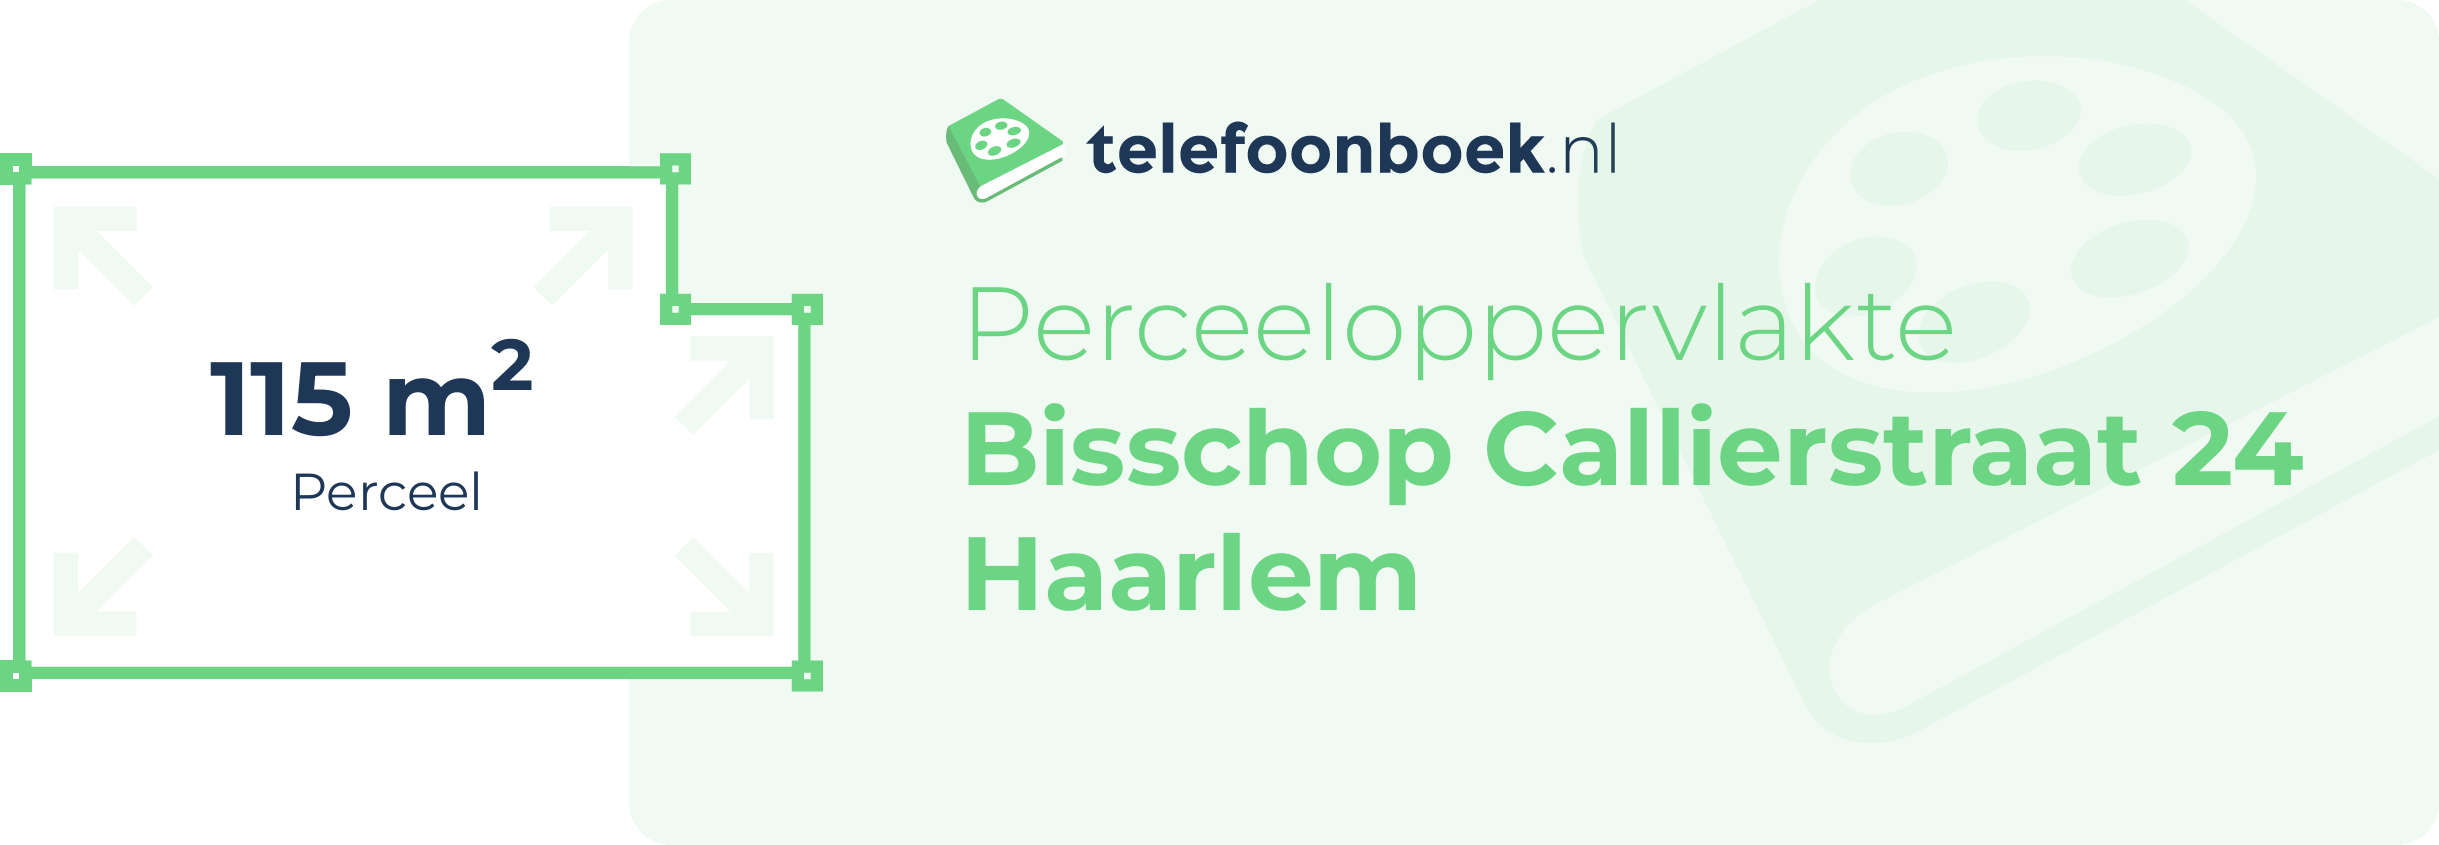 Perceeloppervlakte Bisschop Callierstraat 24 Haarlem